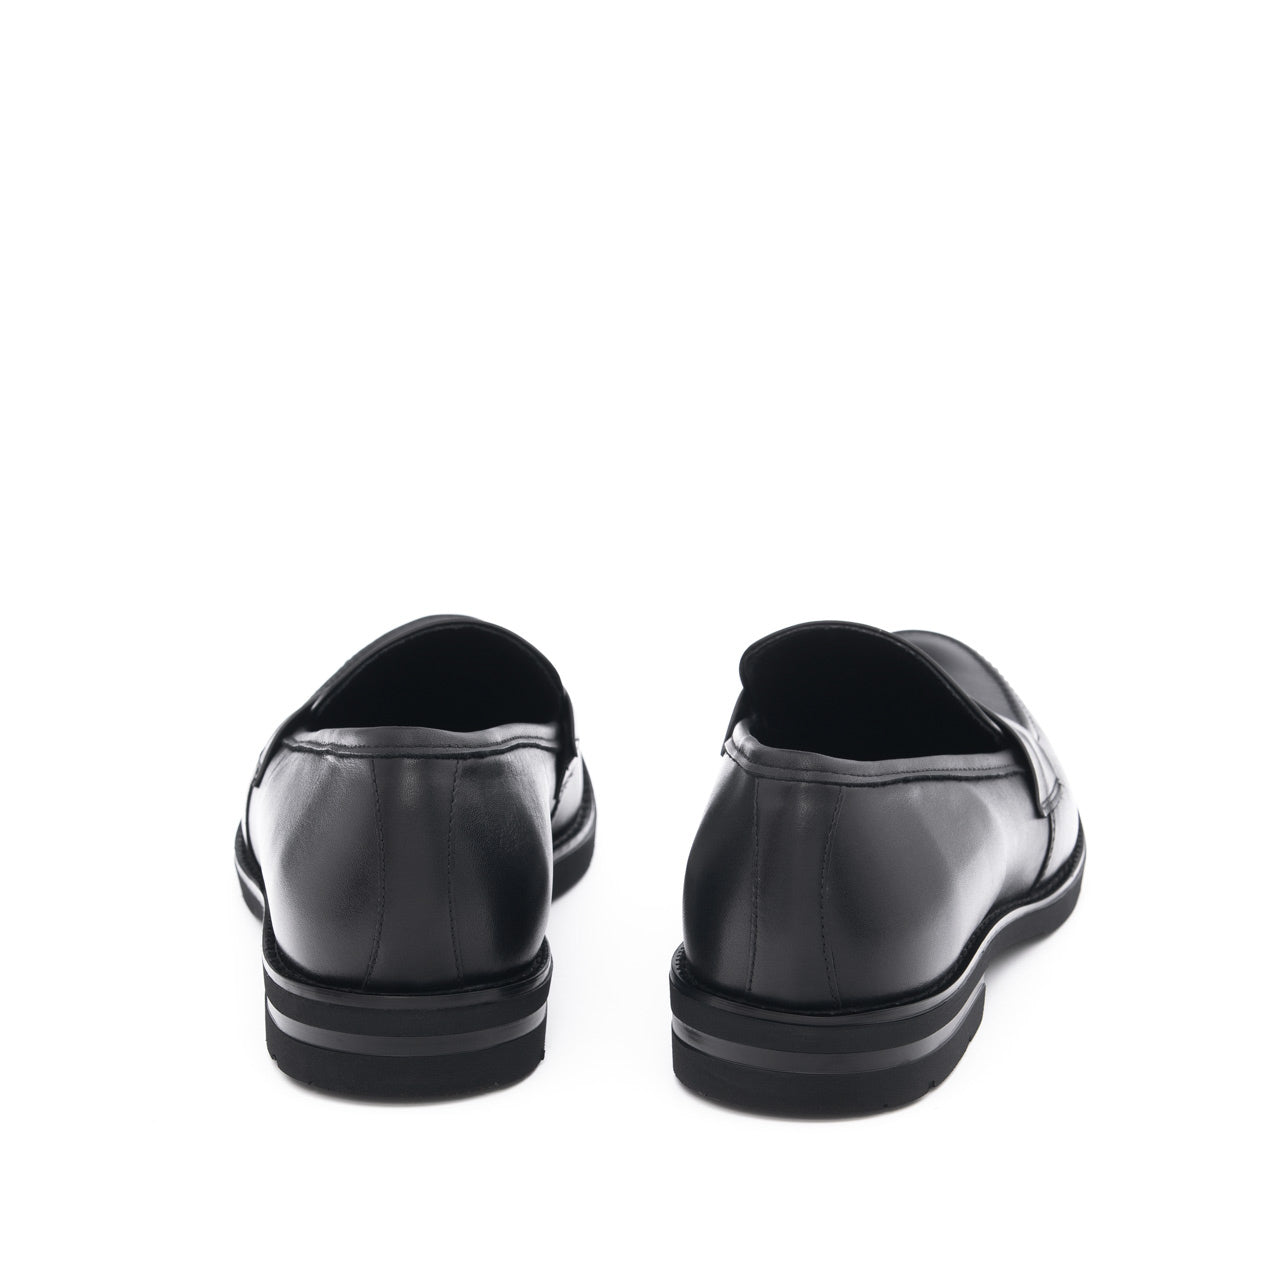 Pantofi casual loafers barbati Franz negru